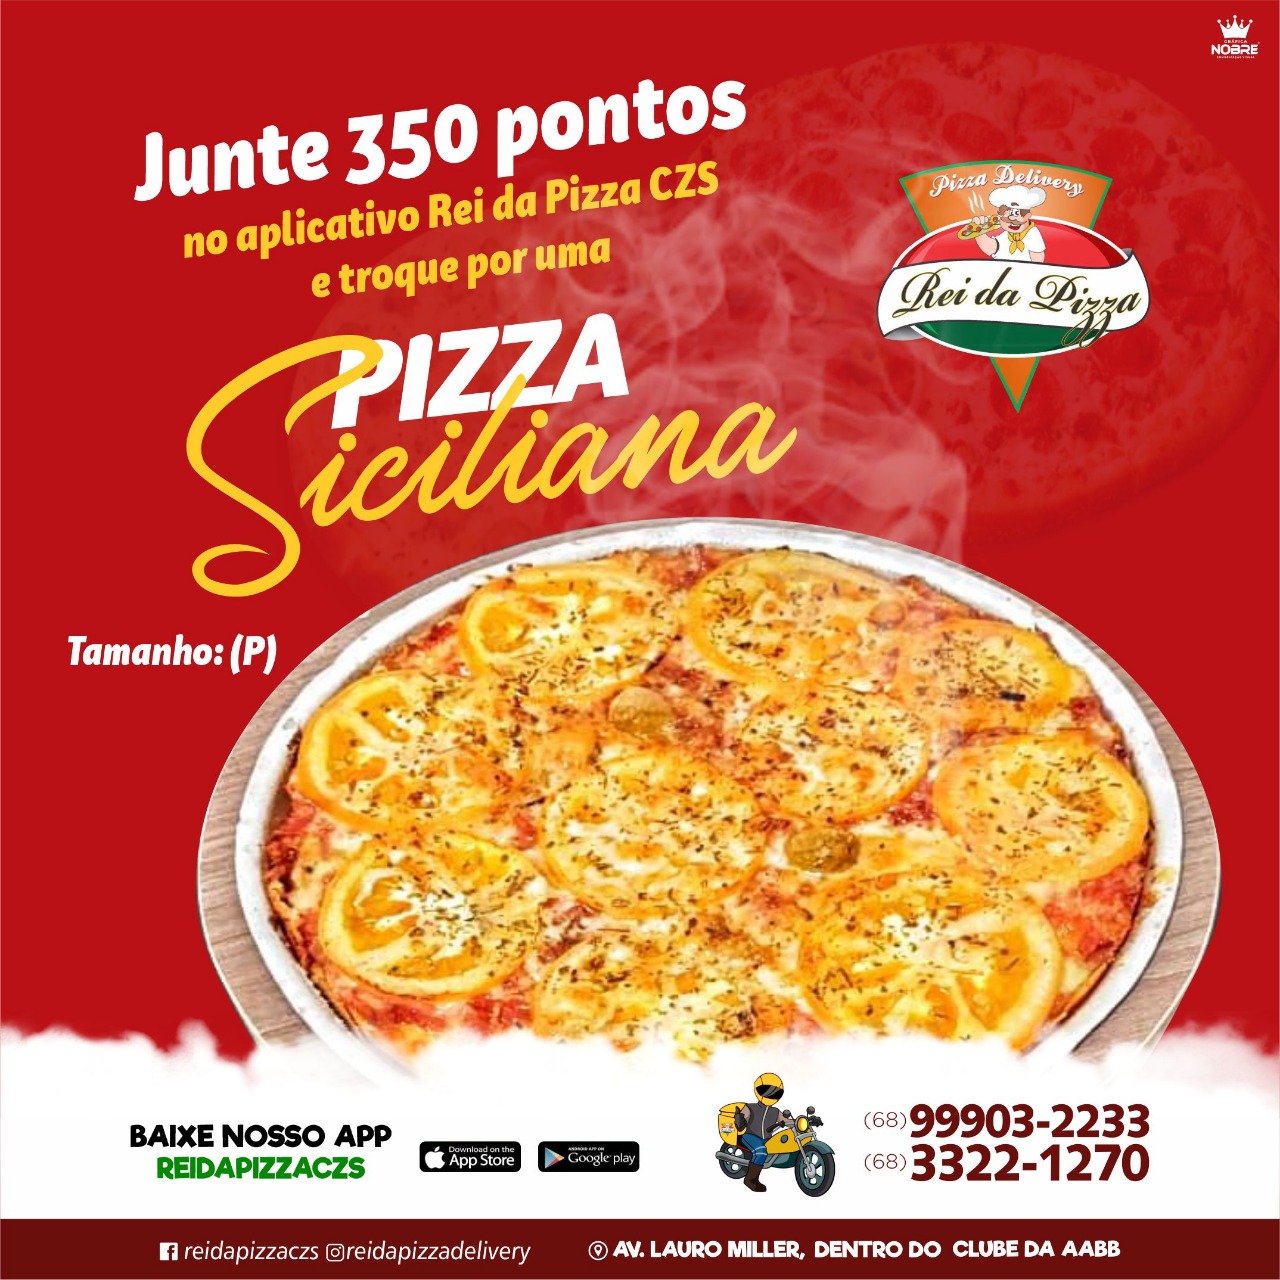 Peça sua #Pizza 🍕 hoje pelo APP 🤳 #reidapizzaczs e acumule pontos para trocar por prêmios exclusivos